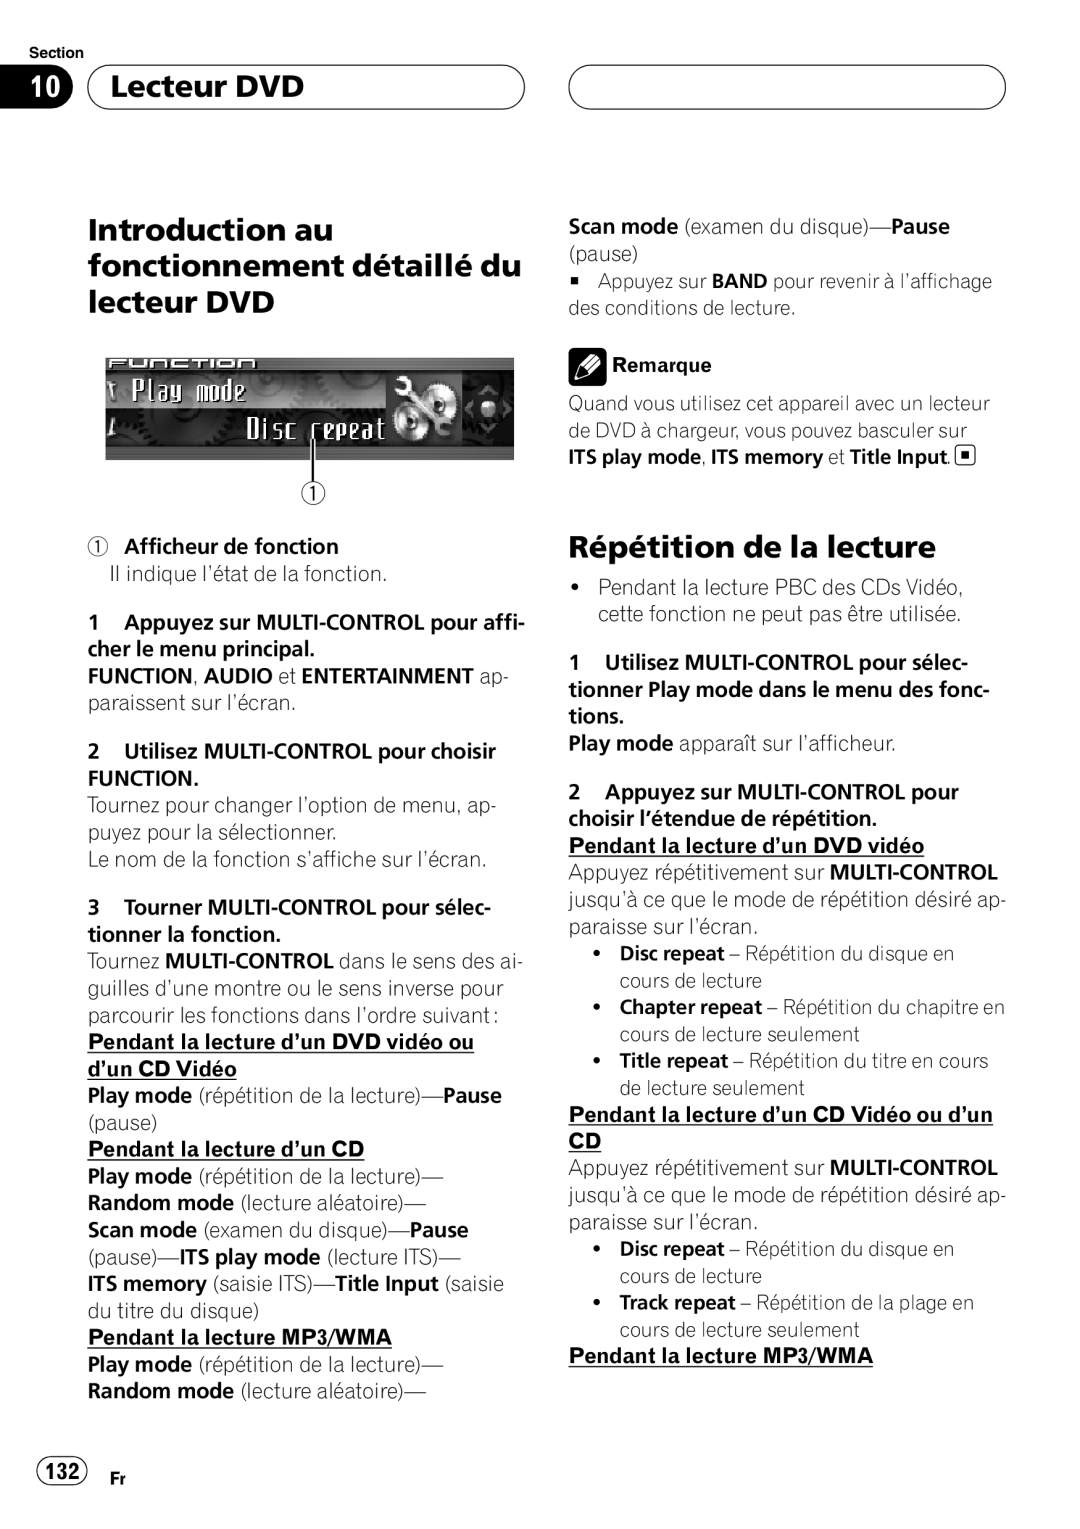 Sirius Satellite Radio DEH-P7800MP operation manual Lecteur DVD, 132 Fr, Répétition de la lecture 